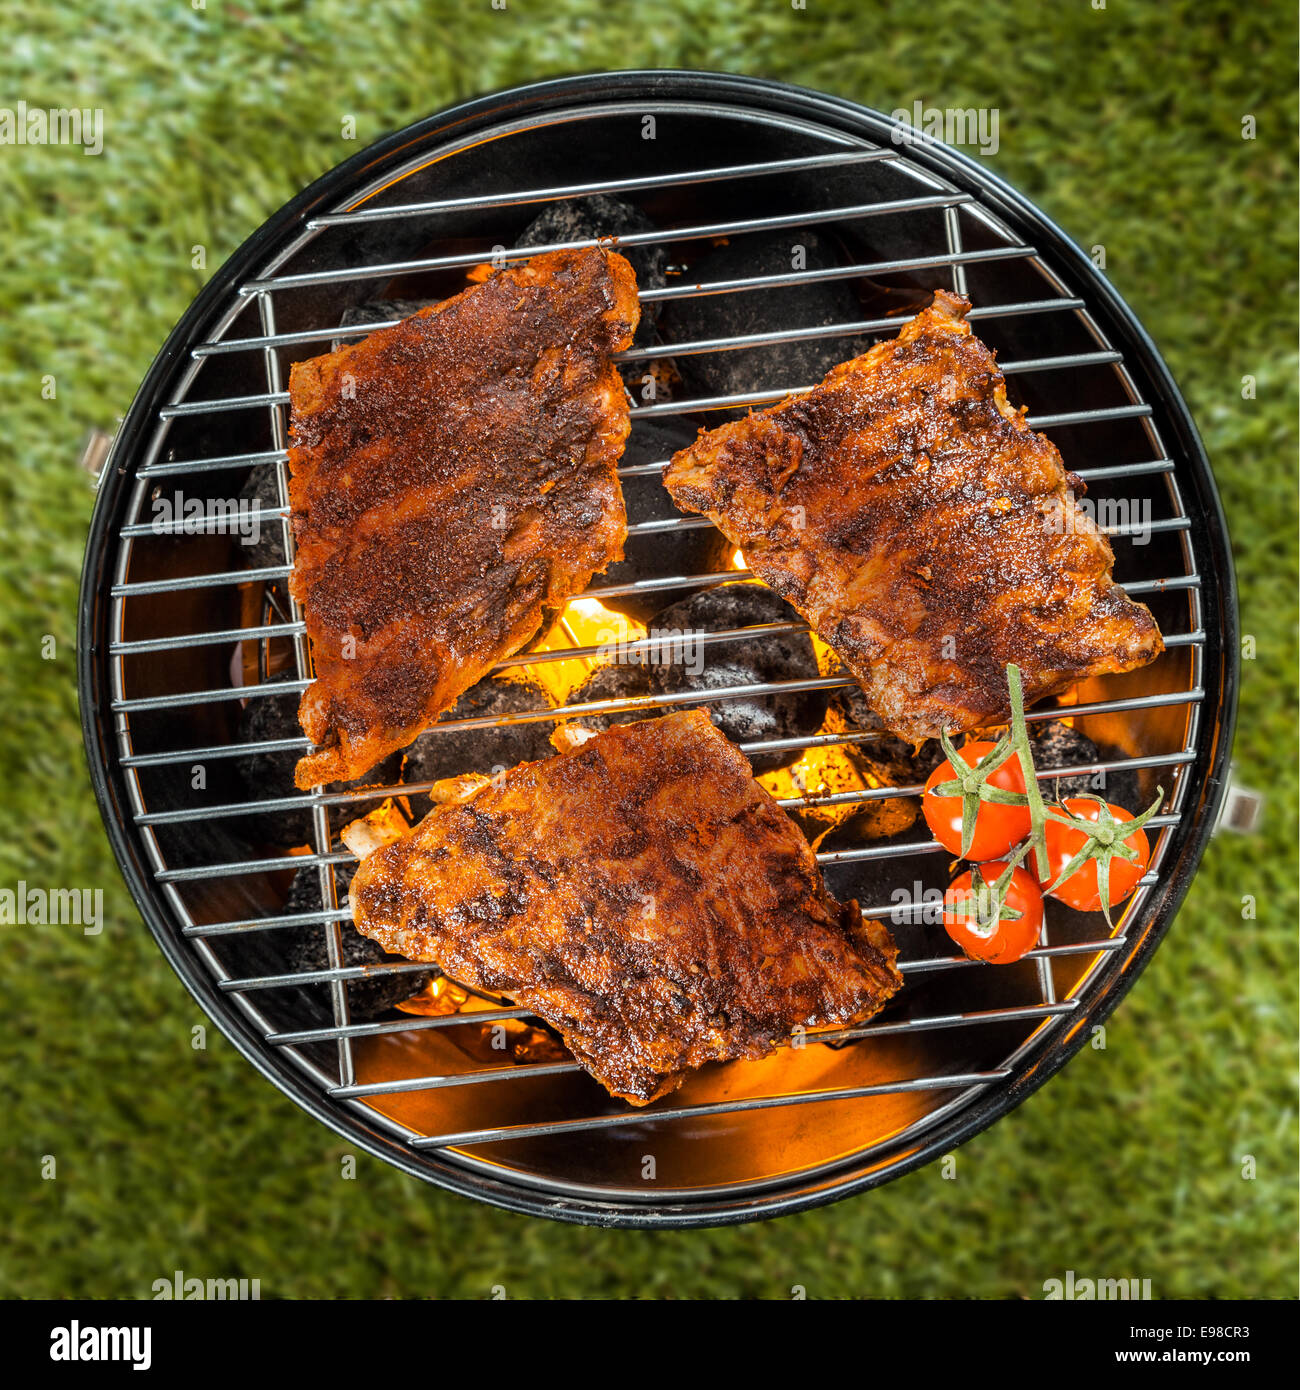 Vista desde arriba de tres deliciosas sazonado racks de costilla cocinar sobre un fuego en una barbacoa portátil de metal redondo barbacoa en el pasto verde Foto de stock